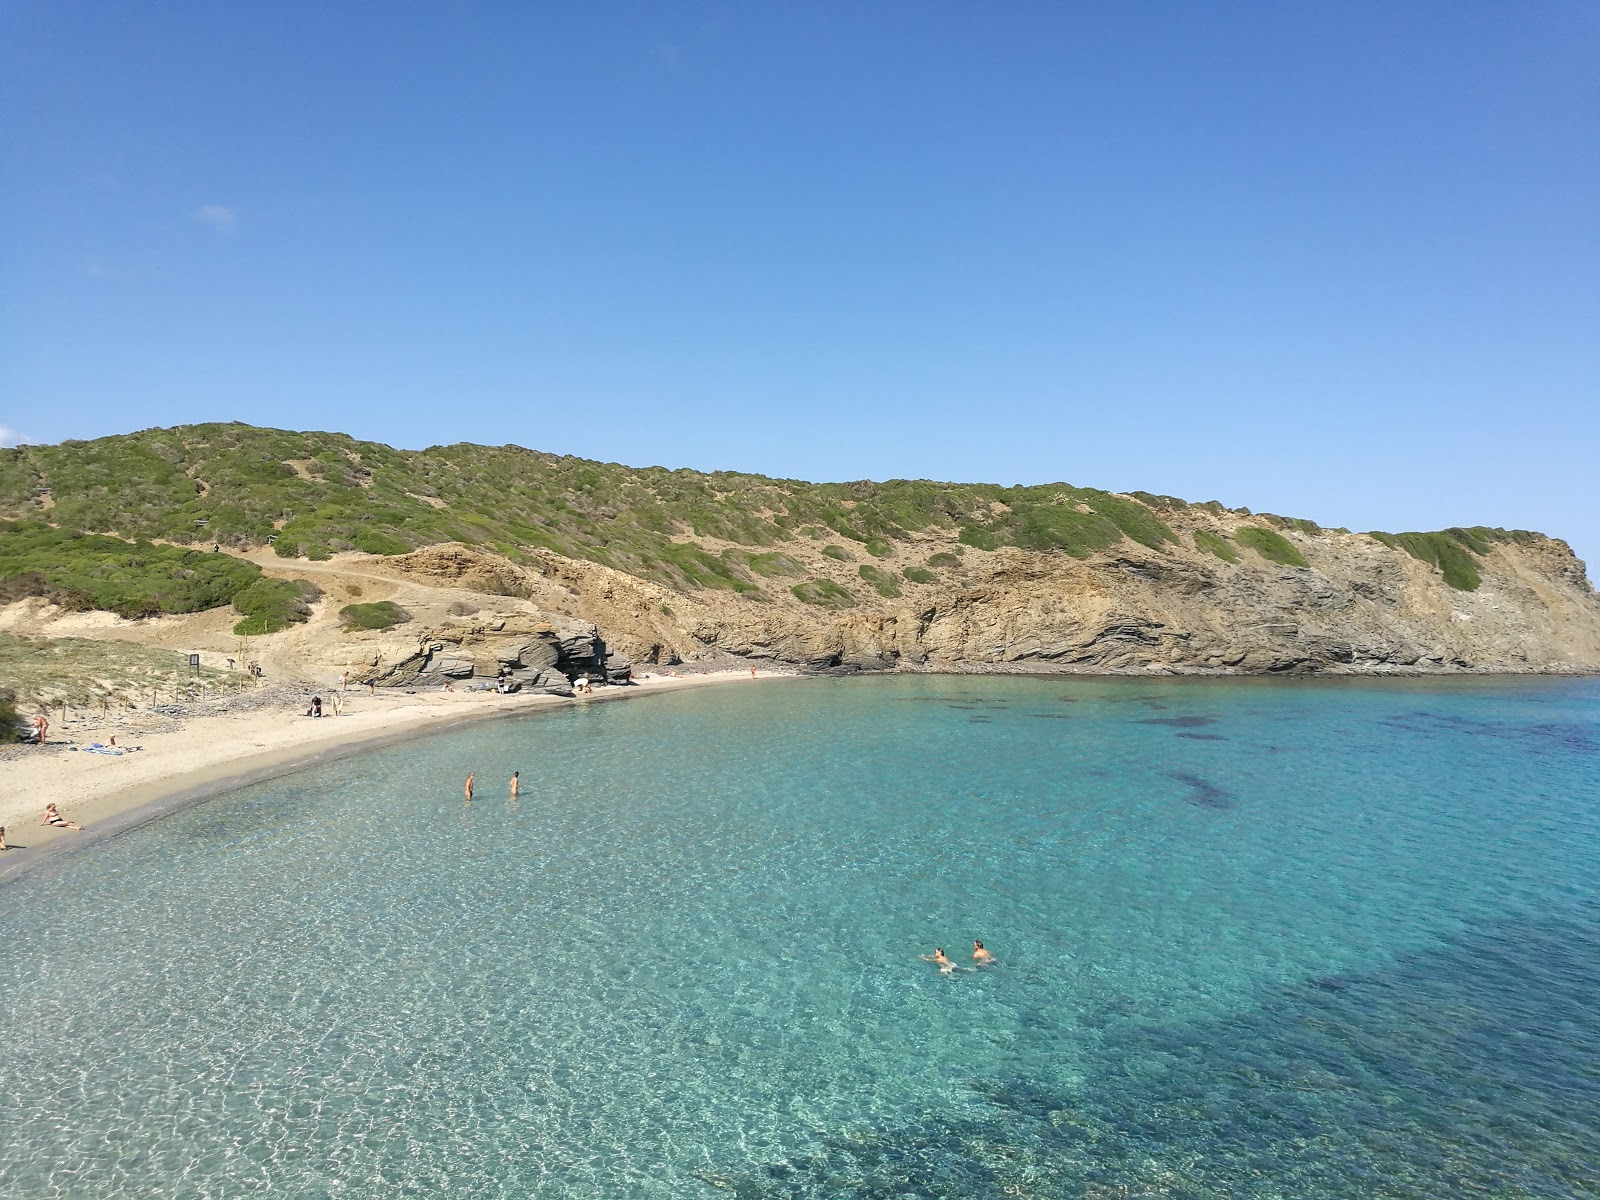 Cala Presili'in fotoğrafı parlak kum yüzey ile